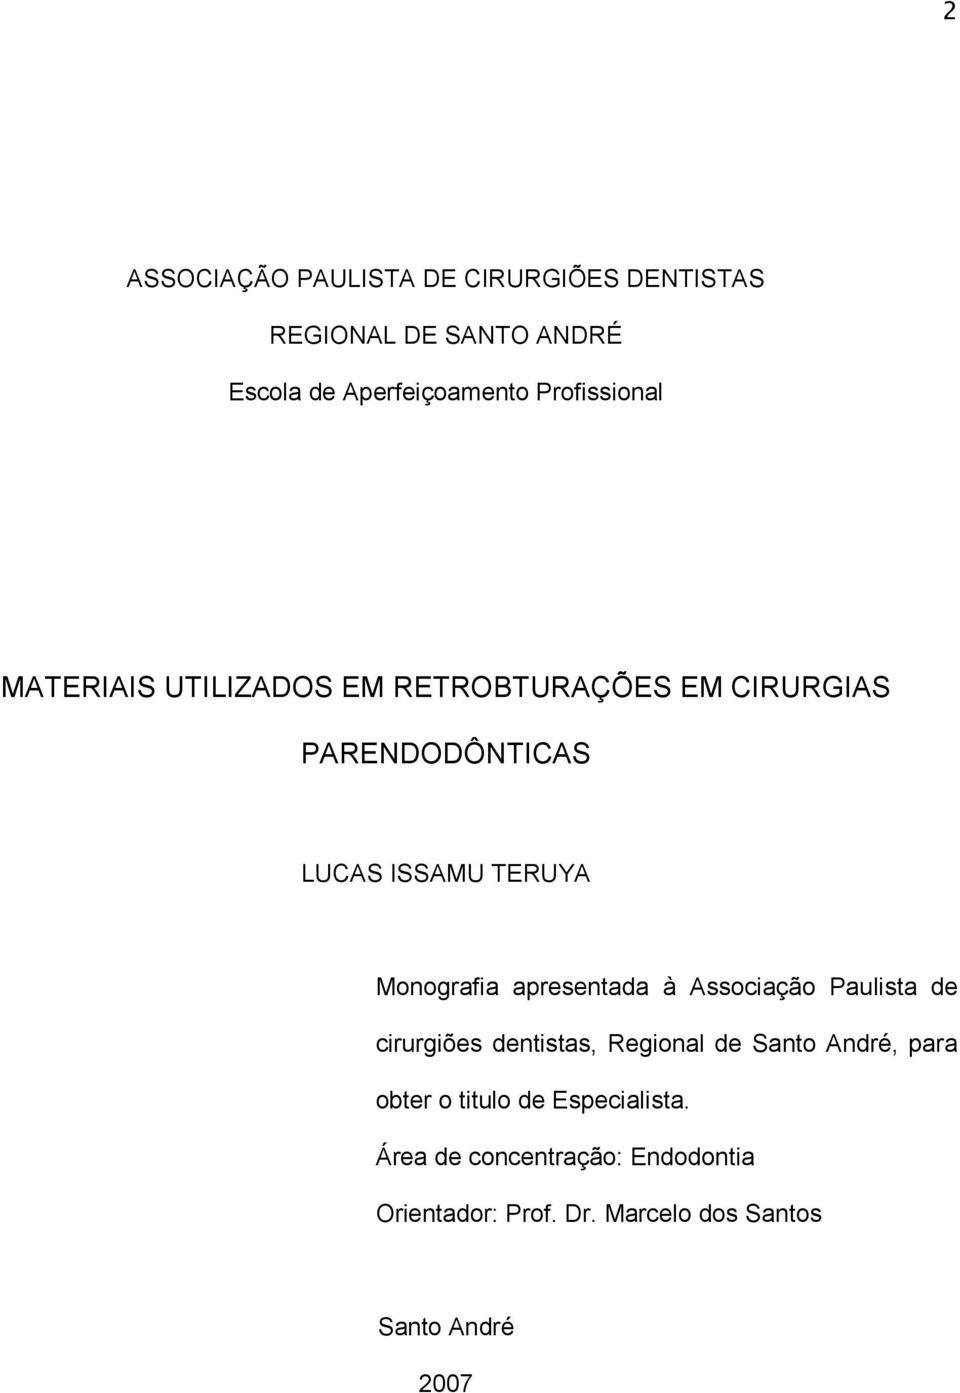 Monografia apresentada à Associação Paulista de cirurgiões dentistas, Regional de Santo André, para